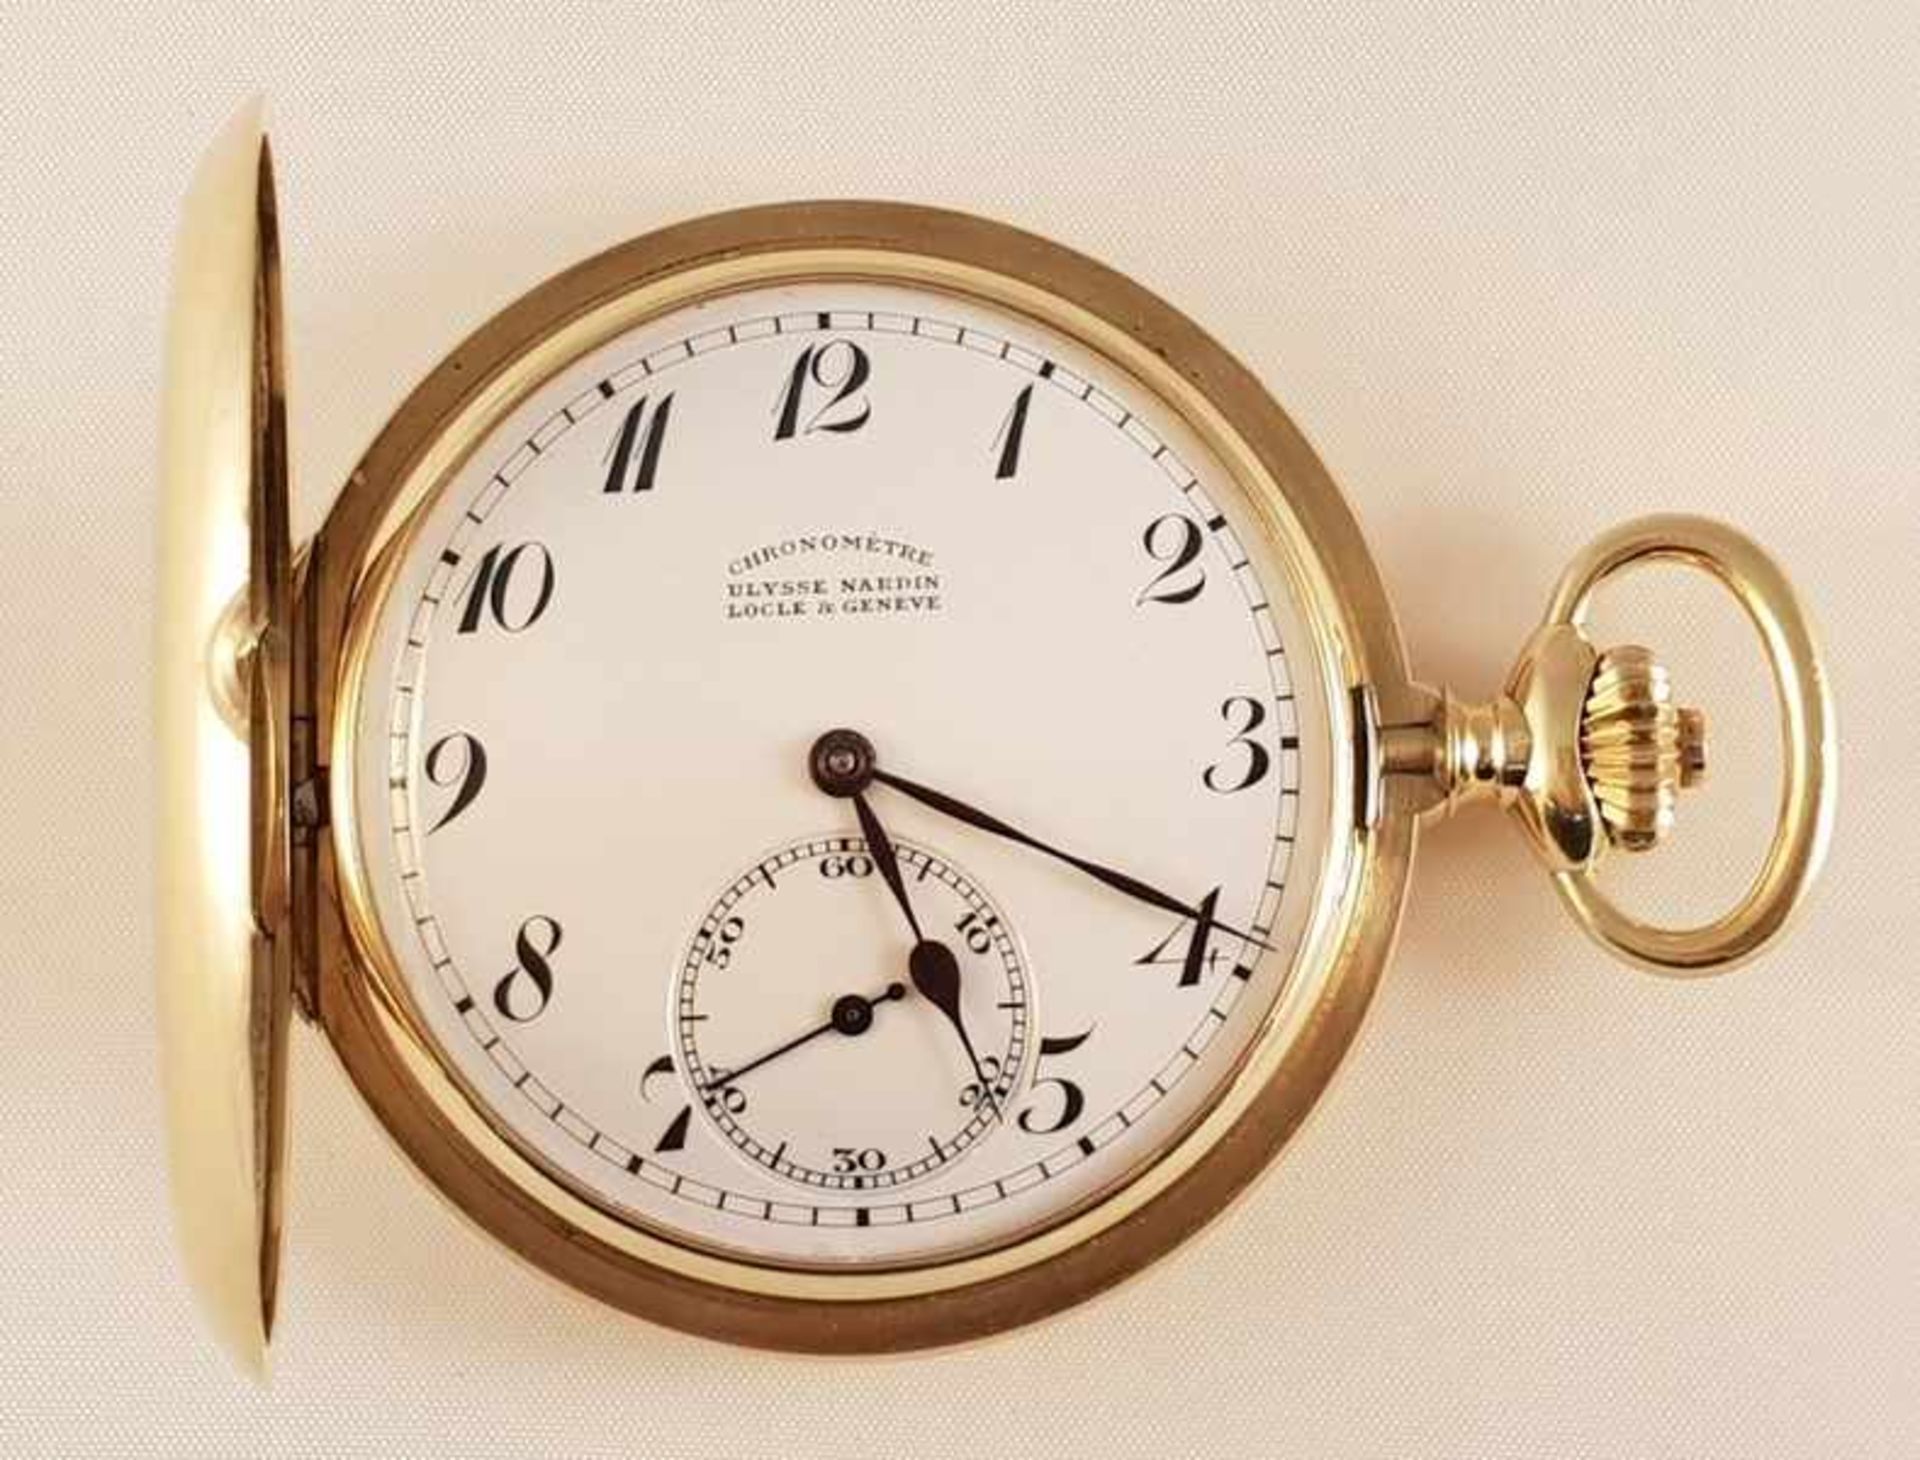 Ulysse Nardin Locle ,Taschenuhr, Gold 750,Anker-Chronometer mit Schwanenhalsfeinregulierung und